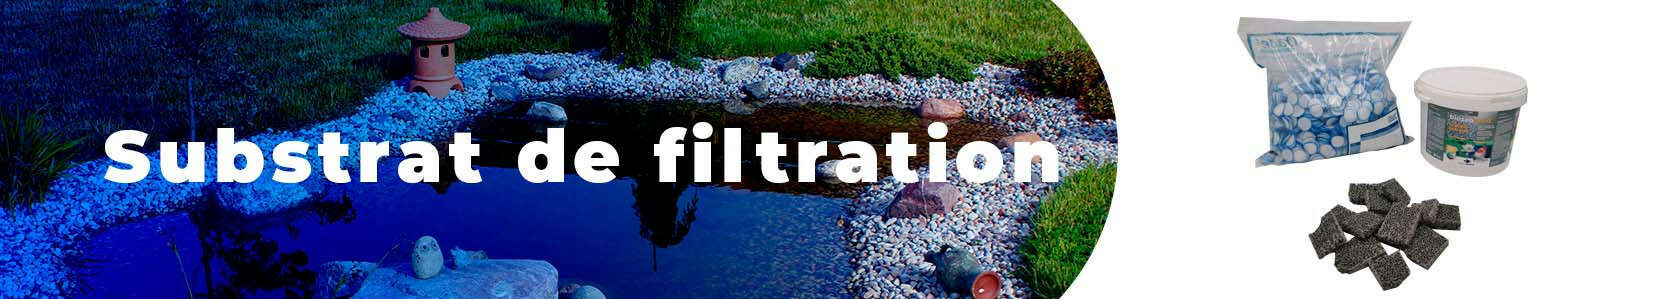 Substrat de filtration pour bassin